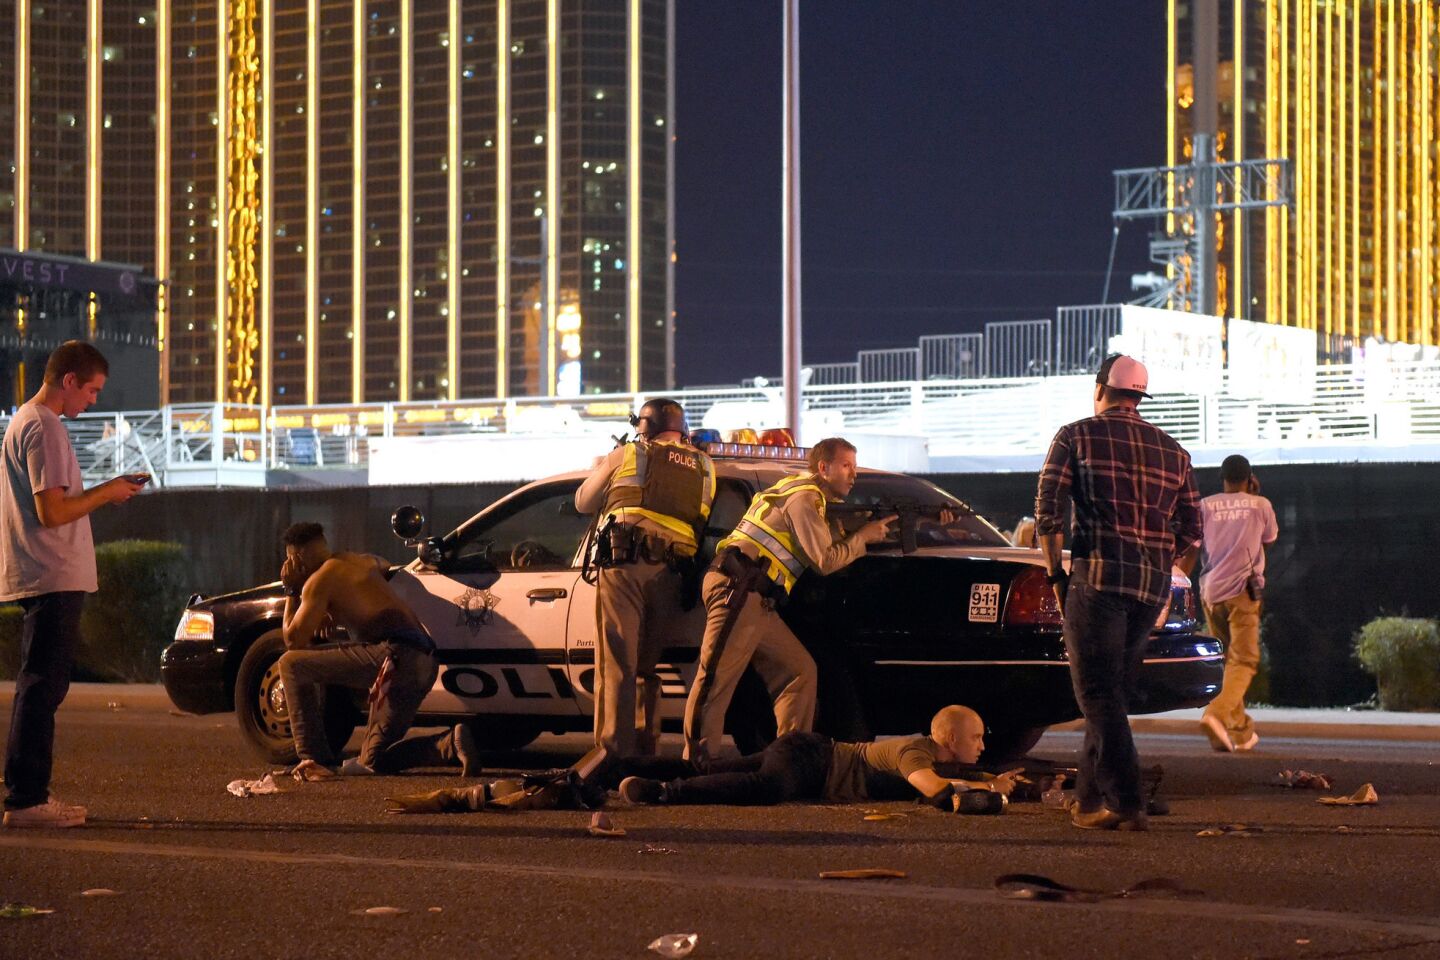 Mass shooting in Las Vegas